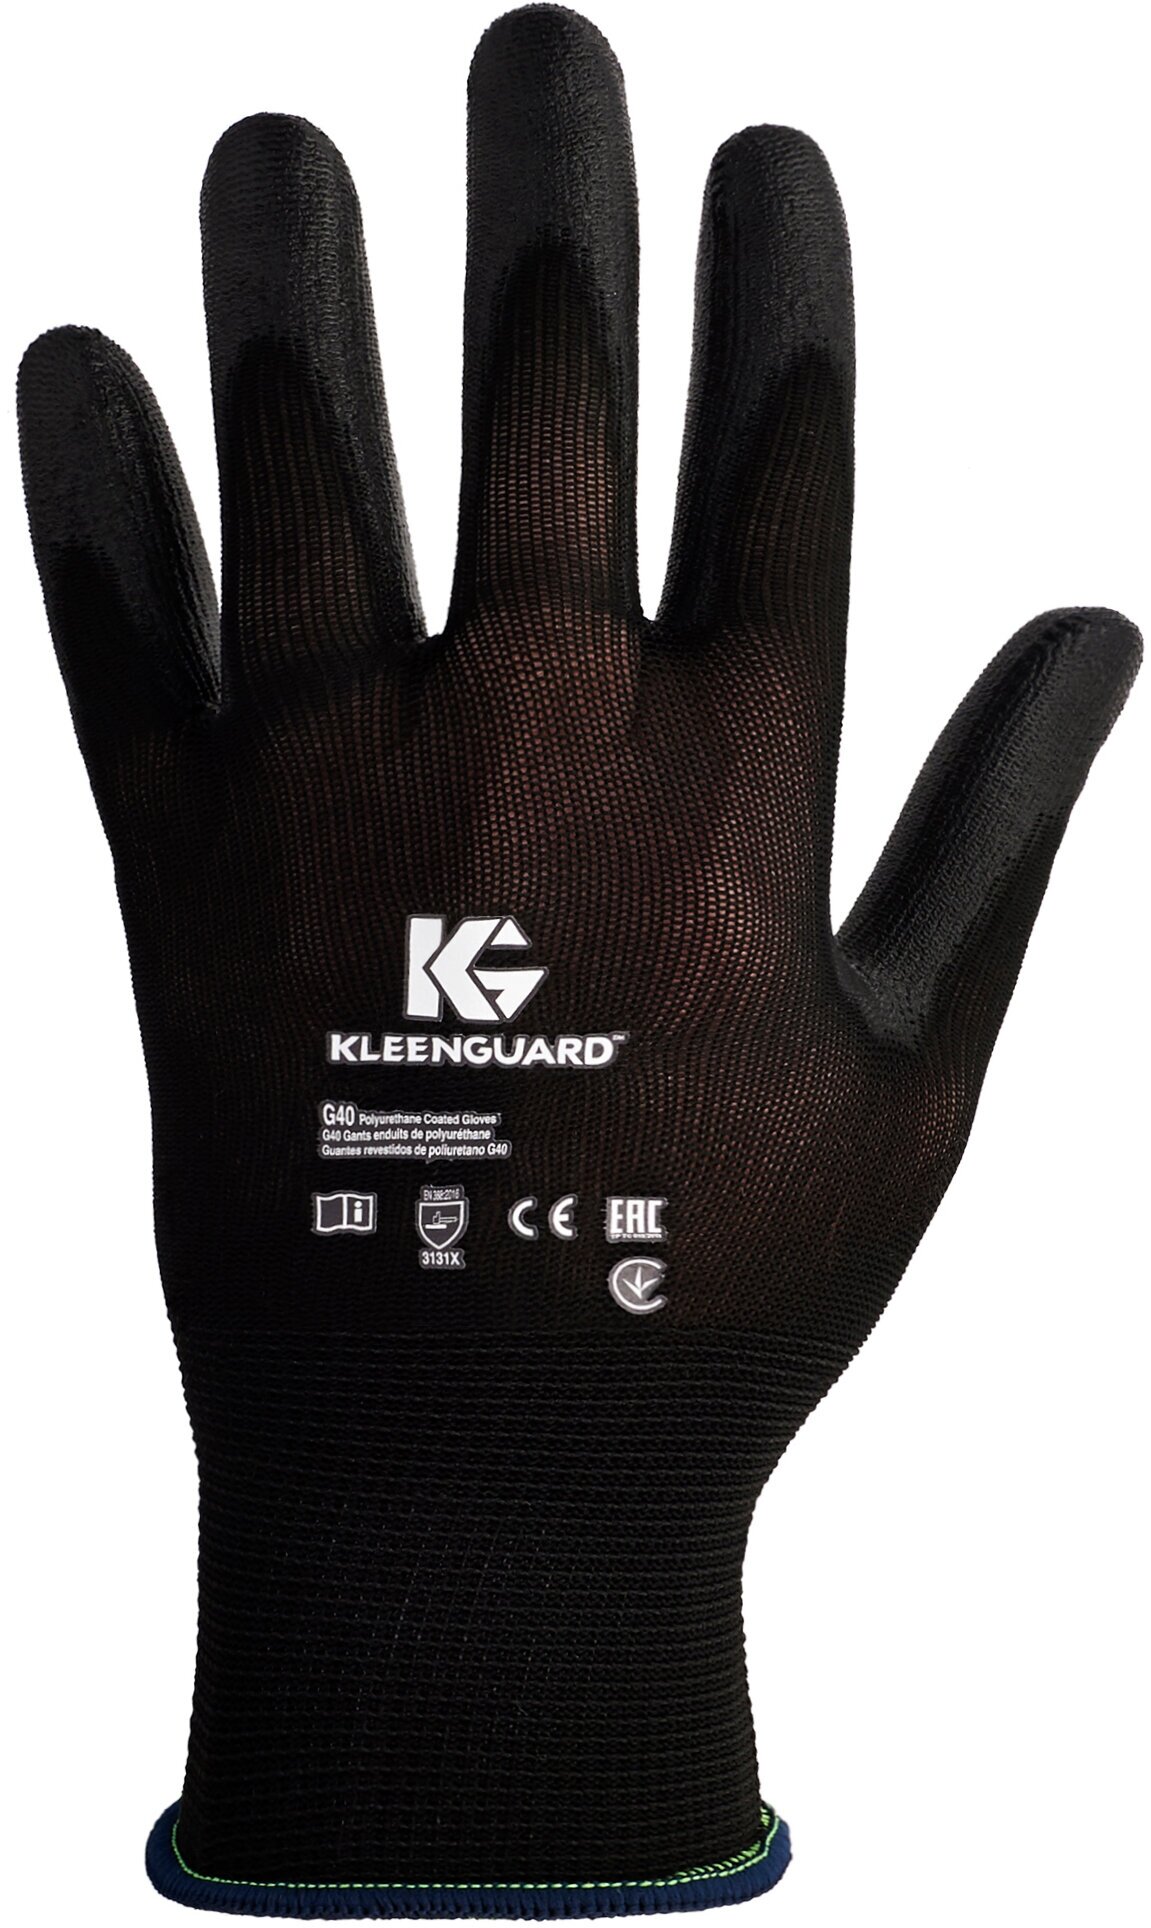 Полиуретановые перчатки KLEENGUARD G40 для работы с мелкими деталями